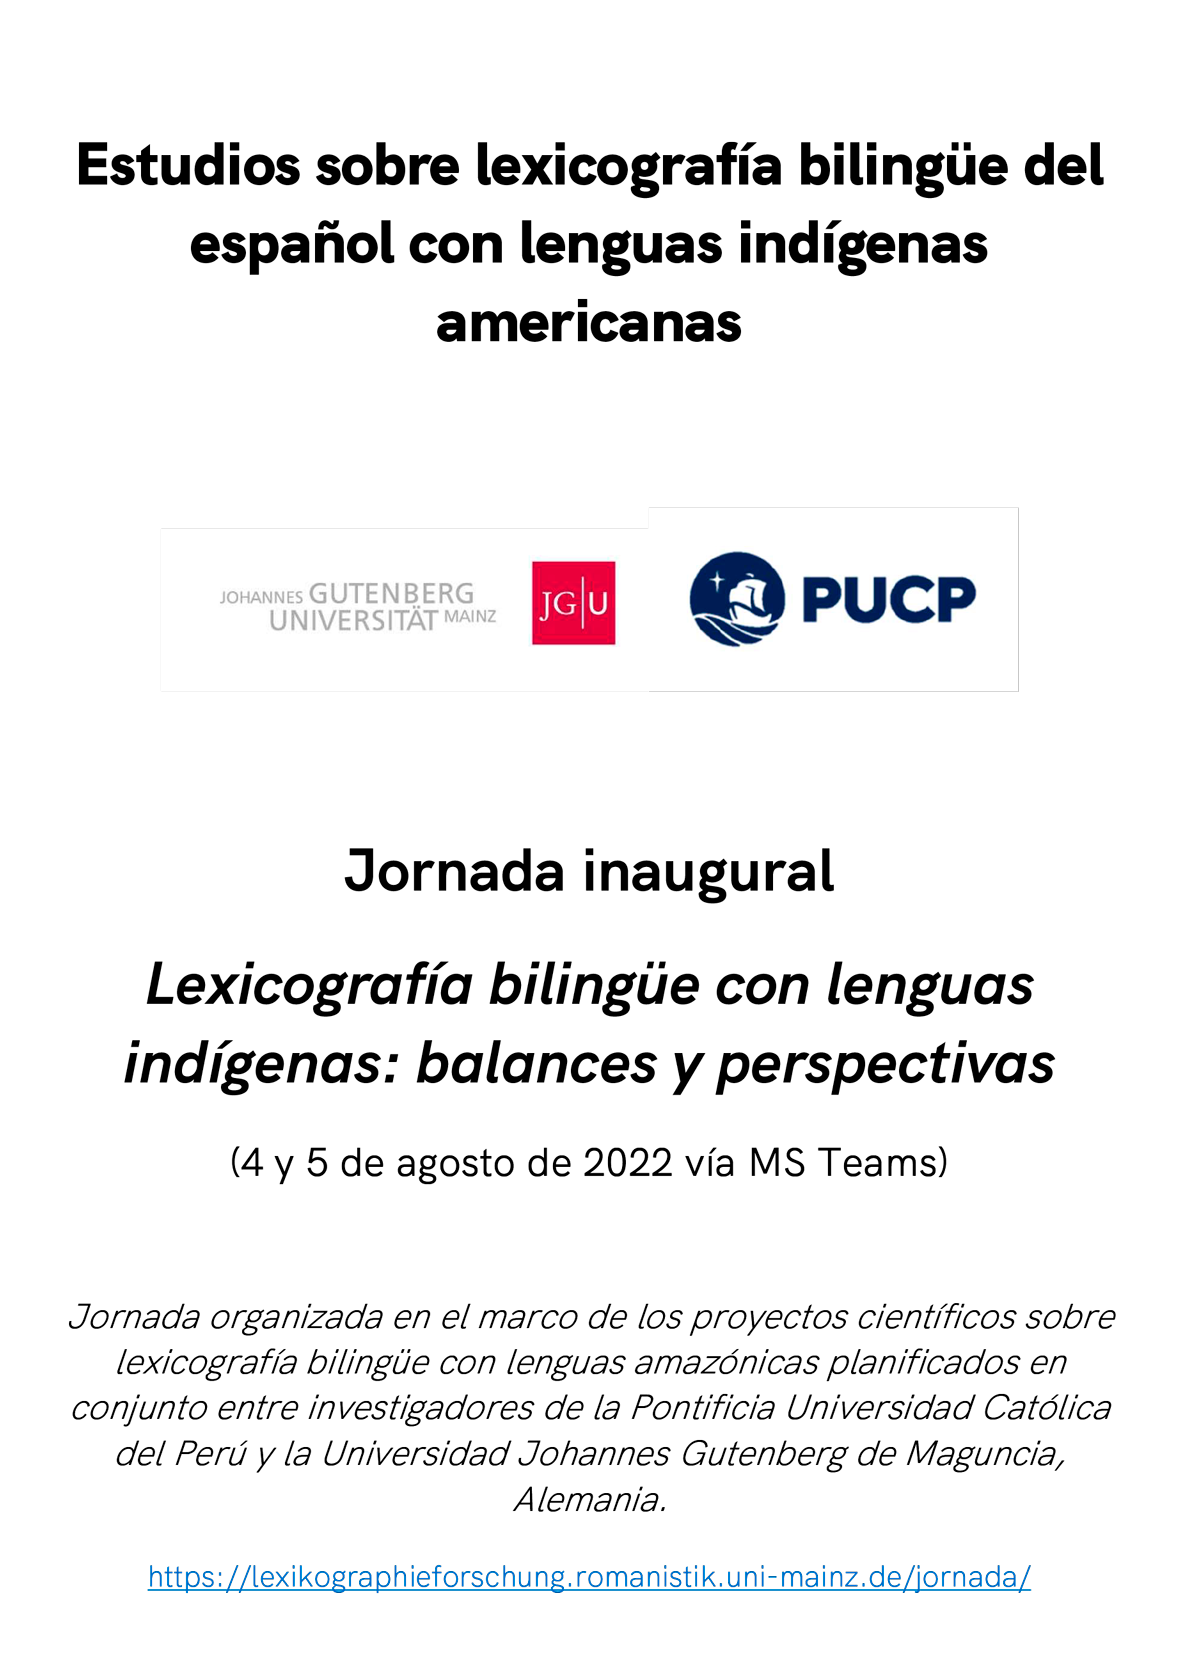 Jornada de Lexicografía Bilingüe con Lenguas Indígenas: Balances y Perspectivas